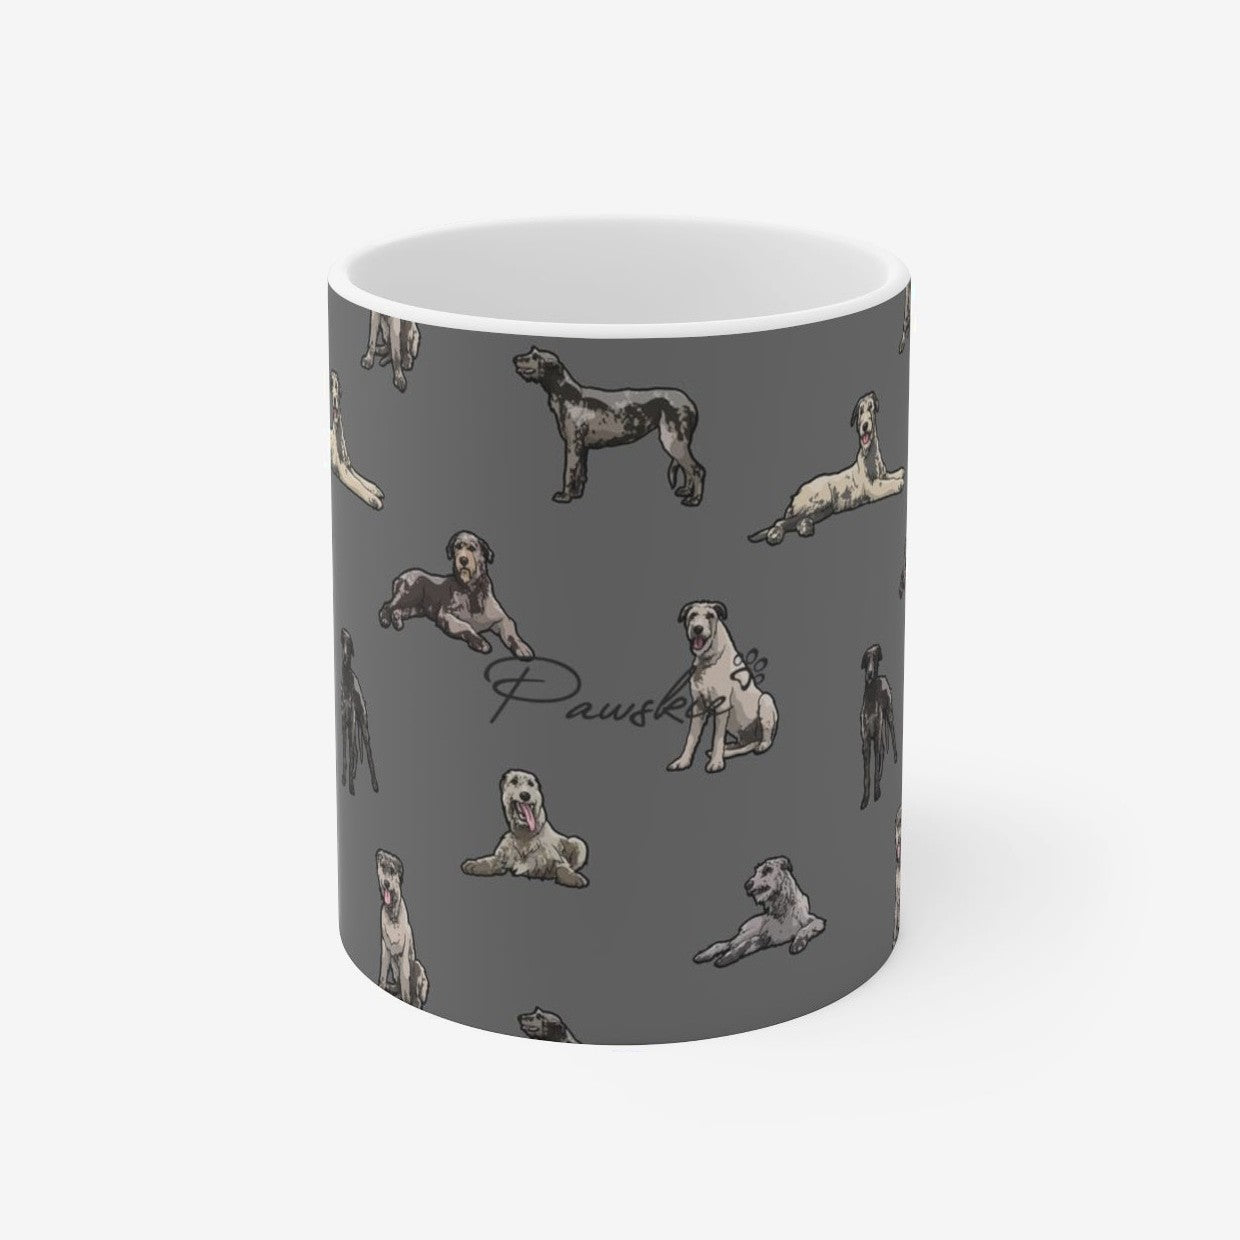 Irish Wolfhound - Mug